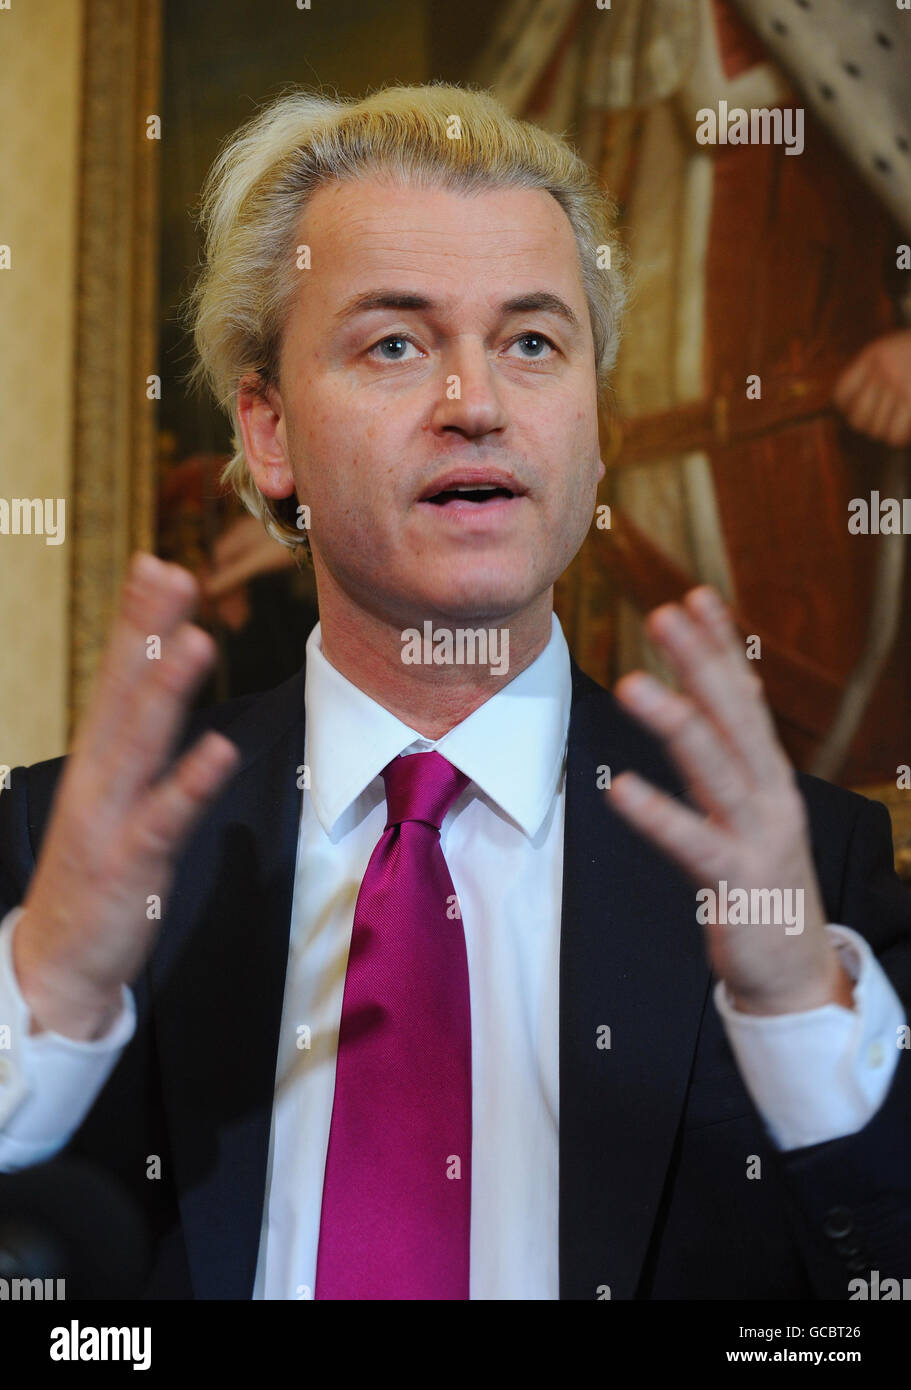 El diputado holandés de derecha Geert Wilders da una conferencia de prensa en Londres después de una proyección de su película, Fitna, en la Cámara de los Lores, que tiene contenido anti-musulmán. Foto de stock